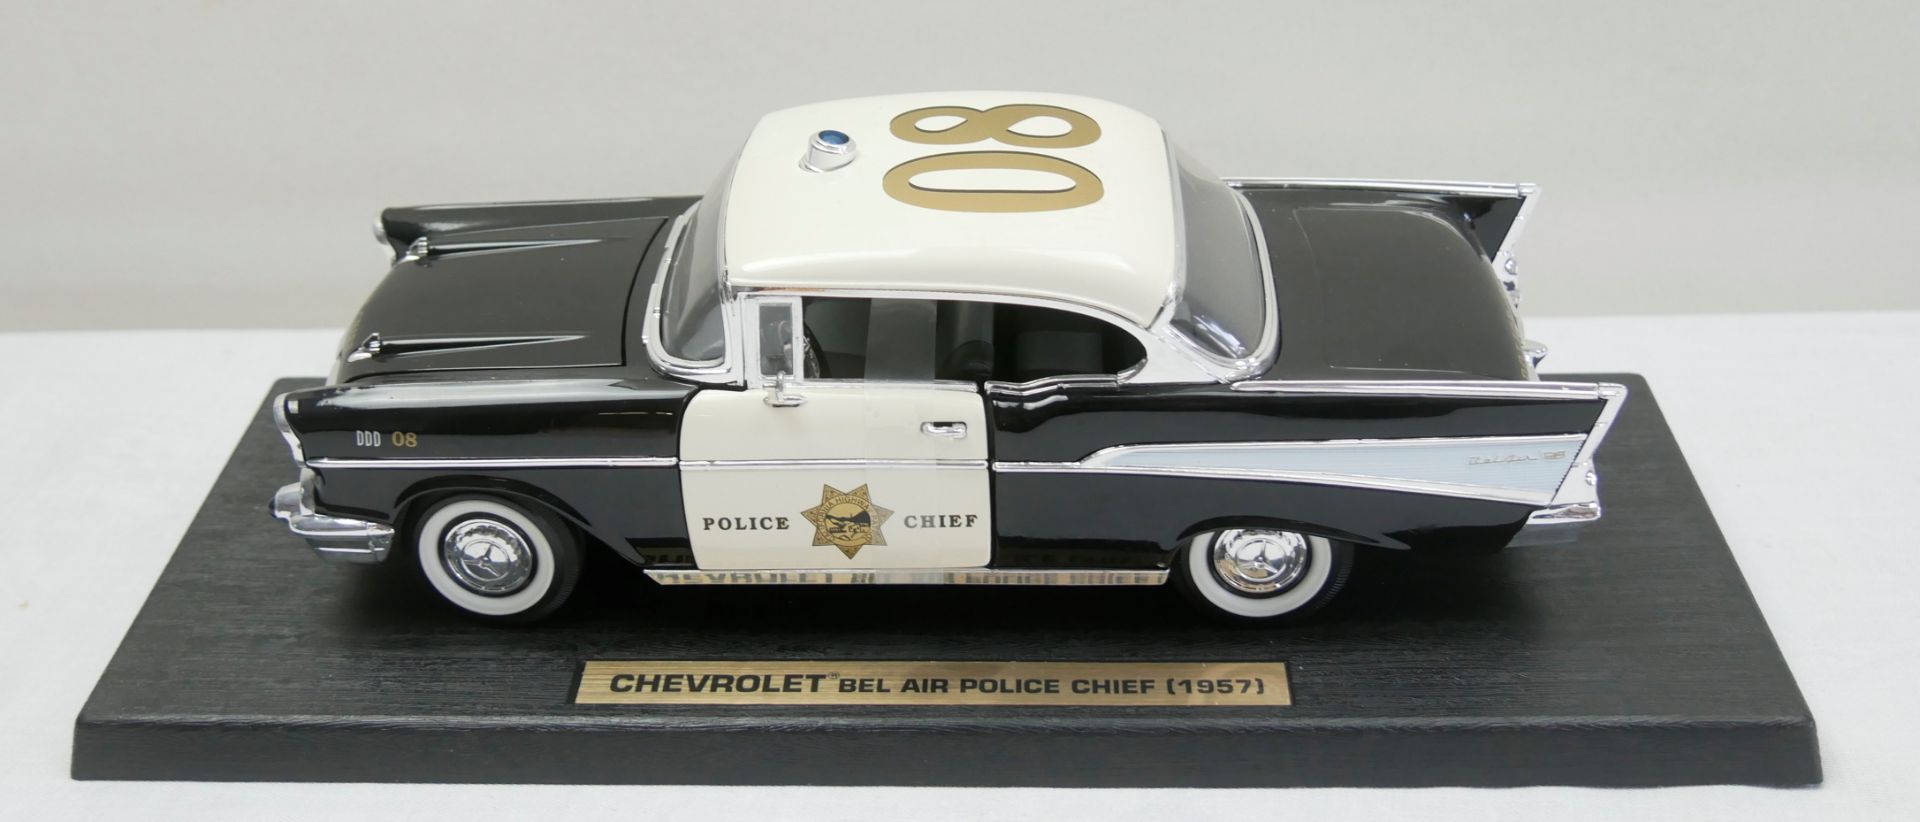 Aus Sammelauflösung! Chevrolet 1957, "Bel Air Police Chief" schwarz metallic, weiß, Modellauto